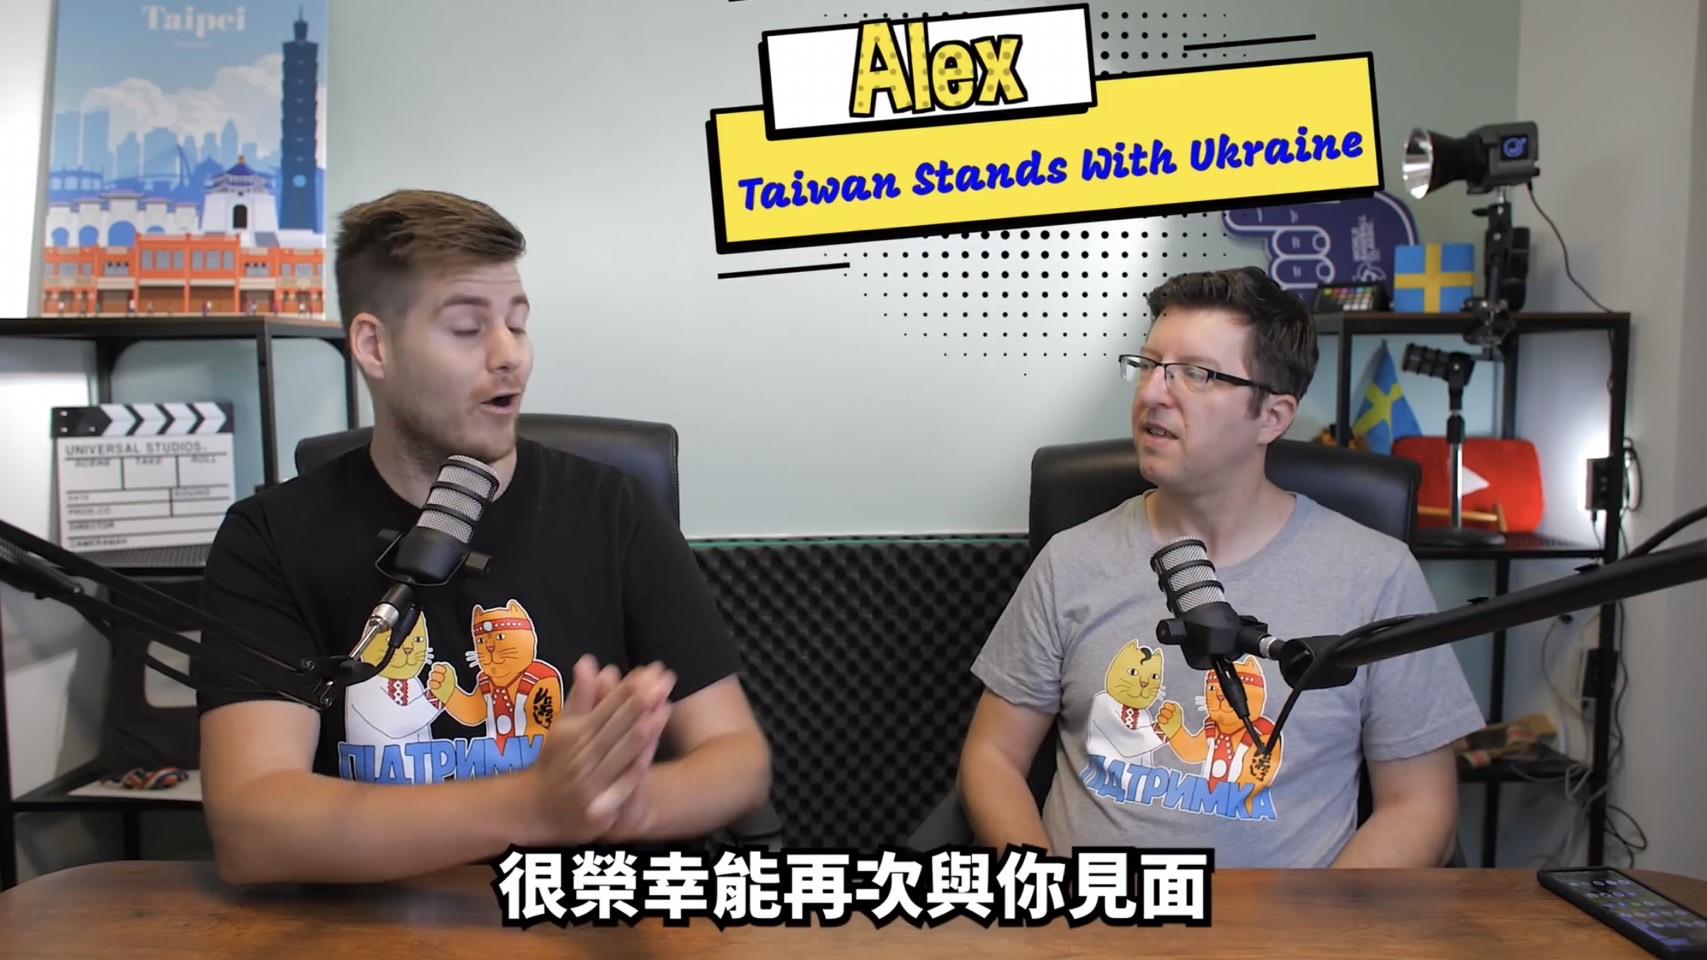 Lukas phỏng vấn Alex, người đồng sáng lập tổ chức “Taiwan Stands With Ukraine”. (Ảnh: Nhân vật ủy quyền cung cấp)